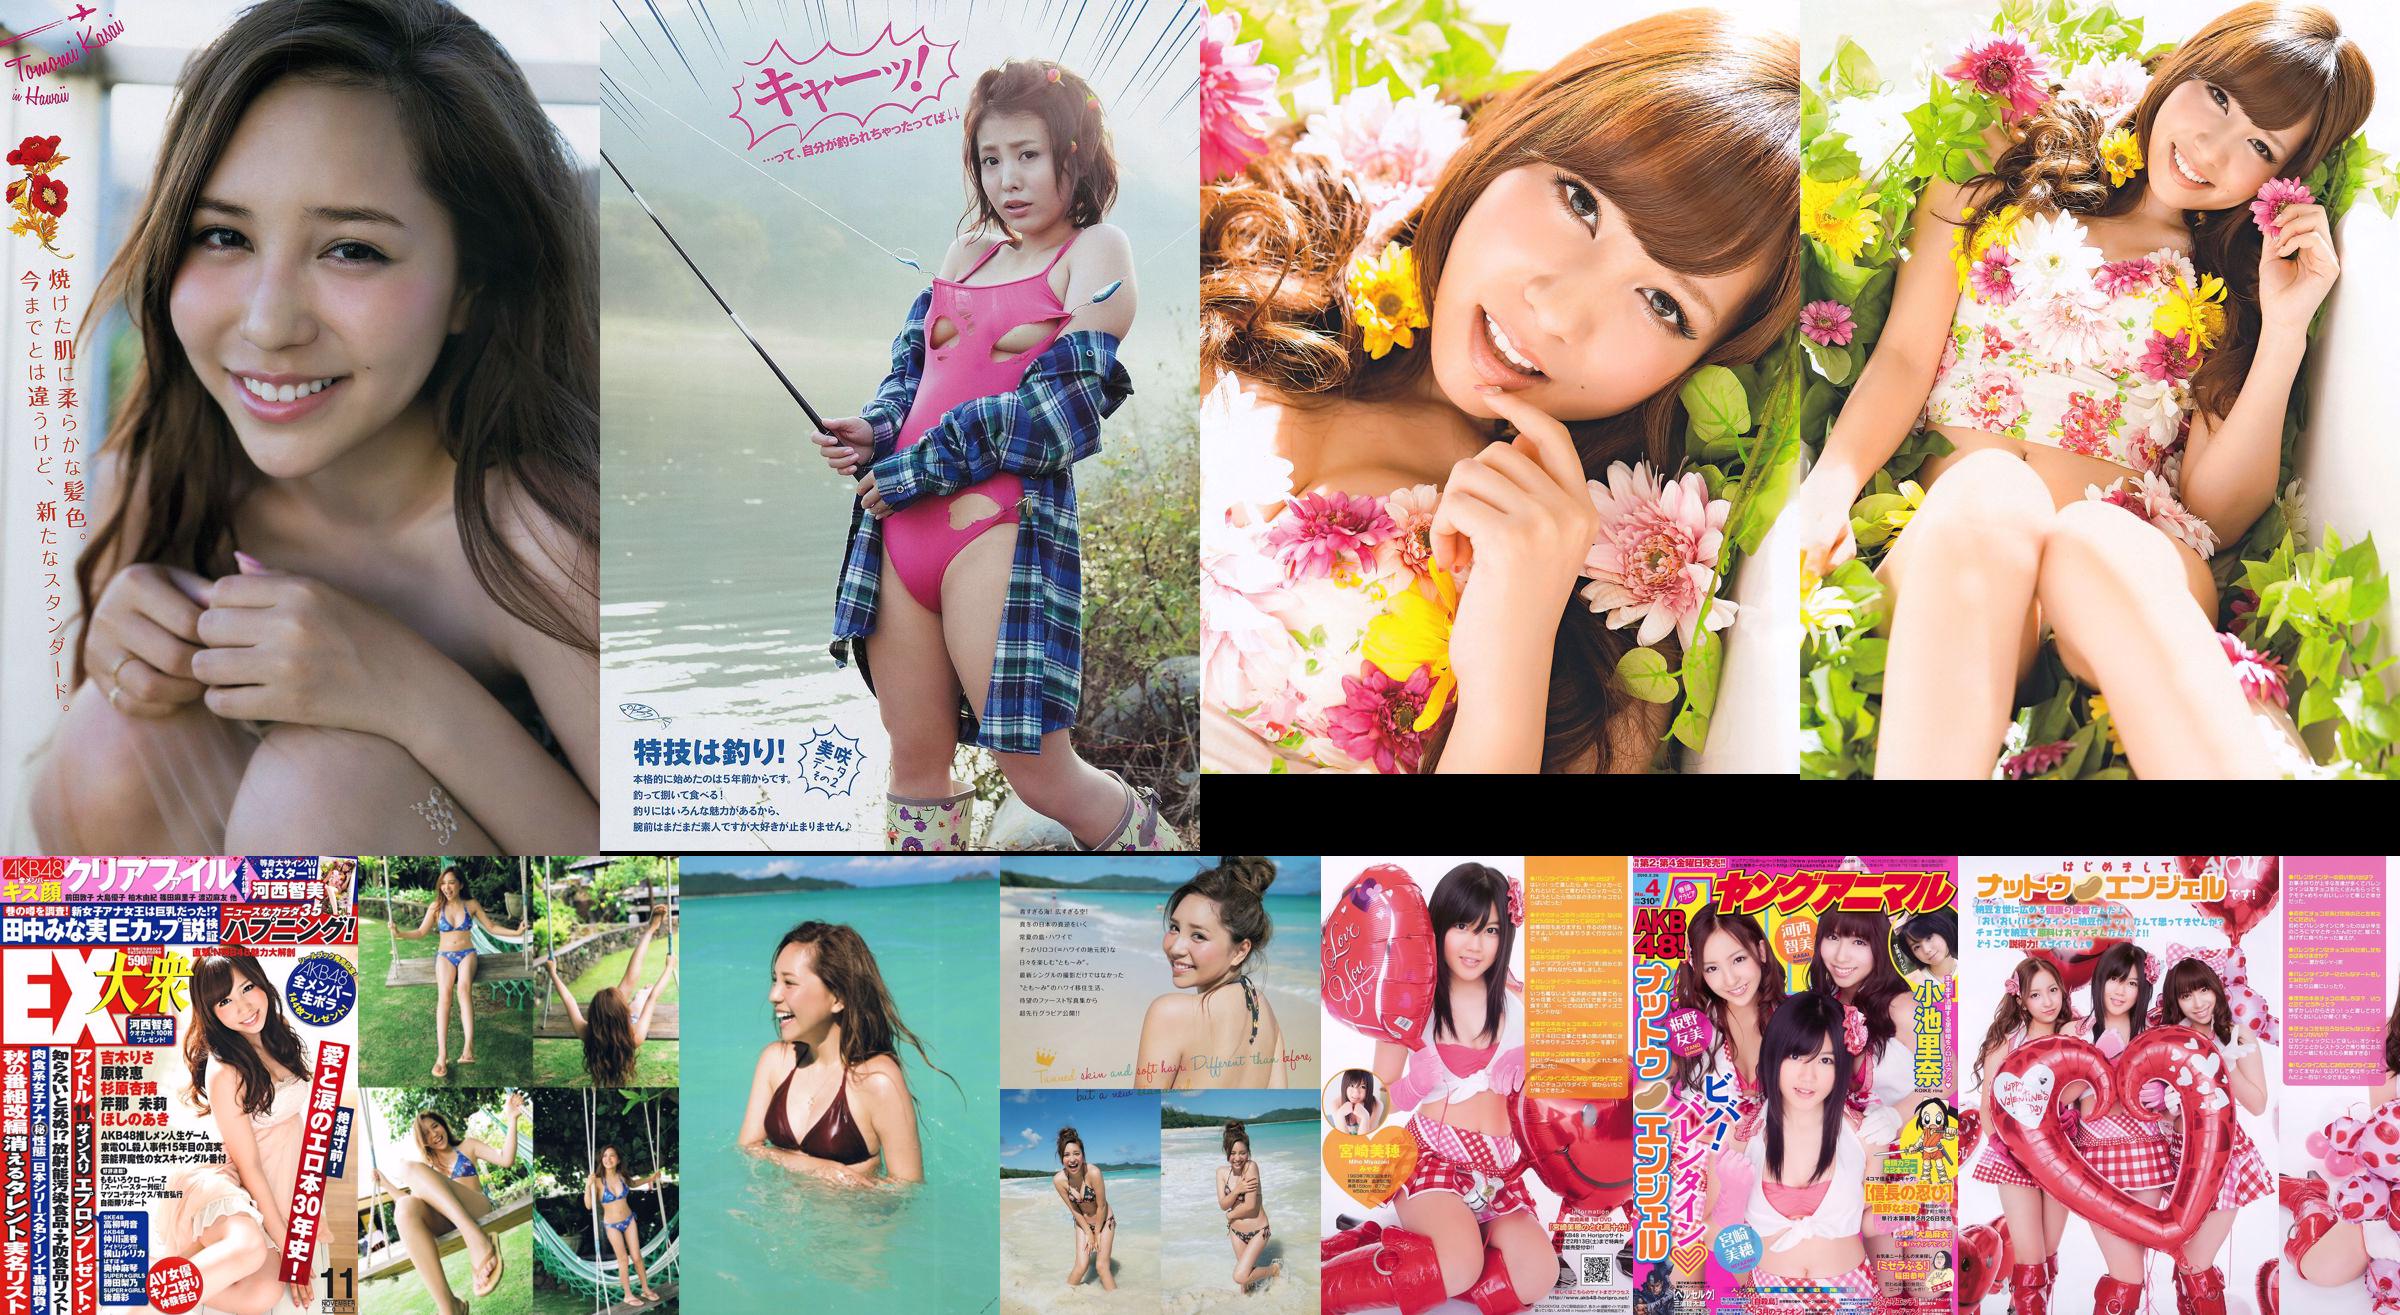 [EX Taishu] Tomomi Kasai Risa Yoshiki Mikie Hara NMB48 Anri Sugihara Aki Hoshino Serina 2011 Photographie n ° 11 No.e09a09 Page 1